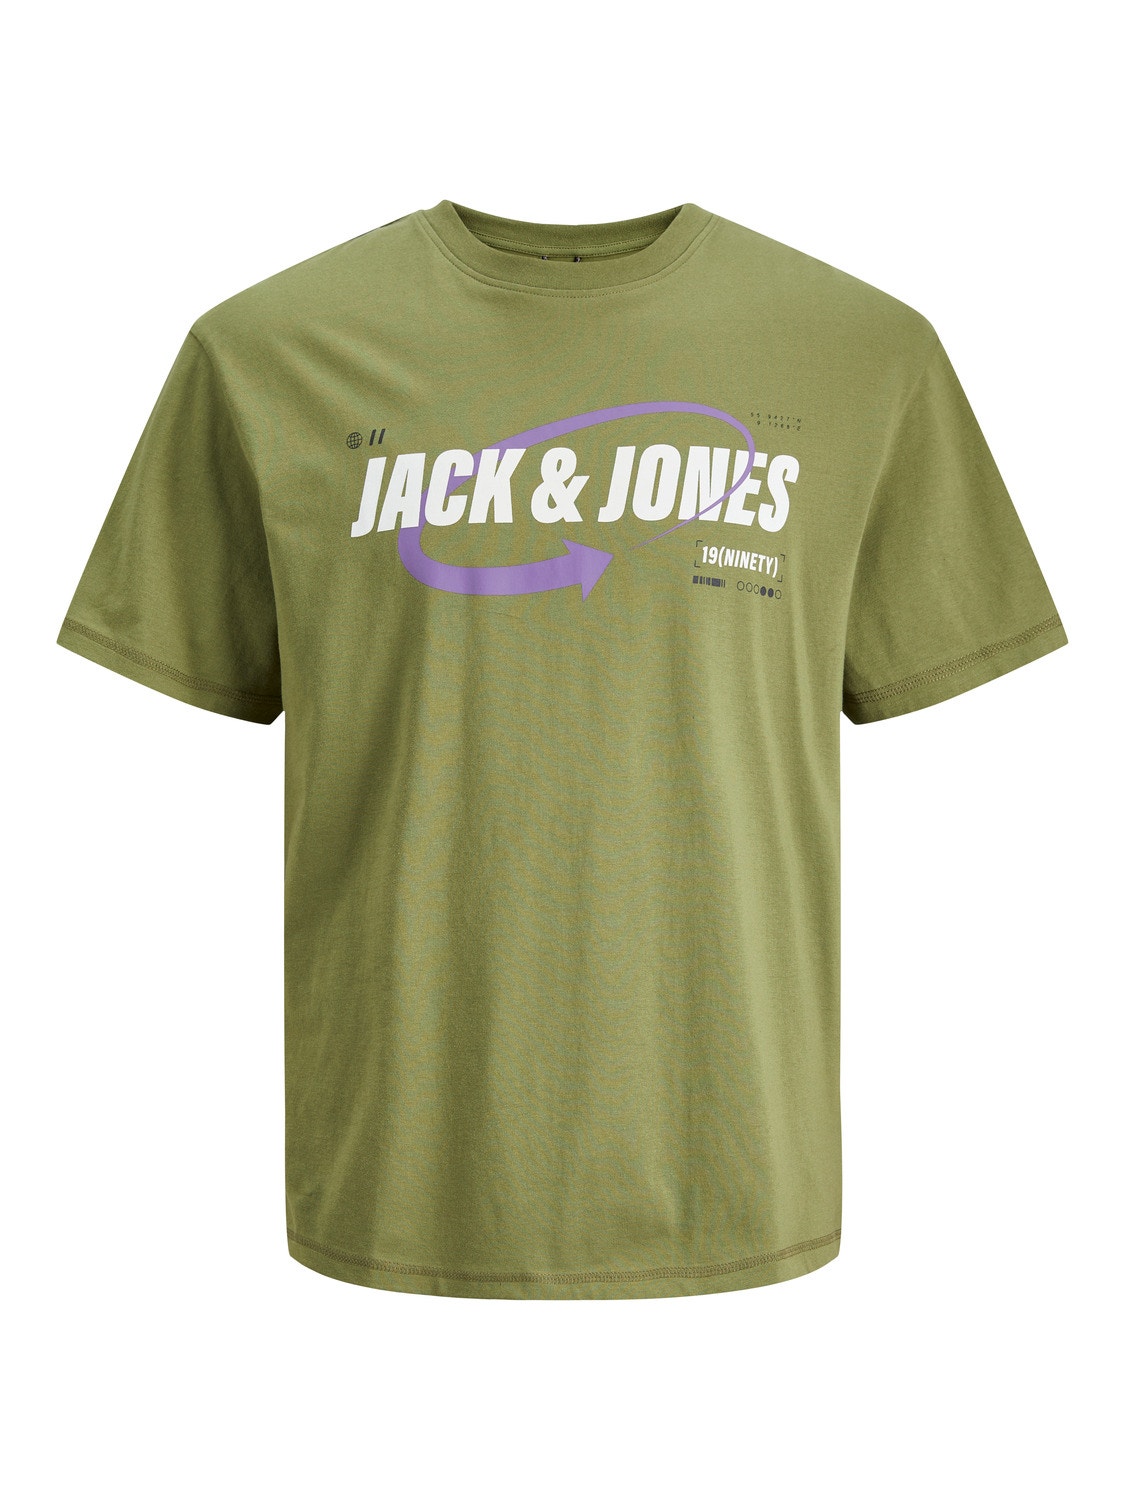 Jack & Jones Logo Pyöreä pääntie T-paita -Olive Branch - 12245712